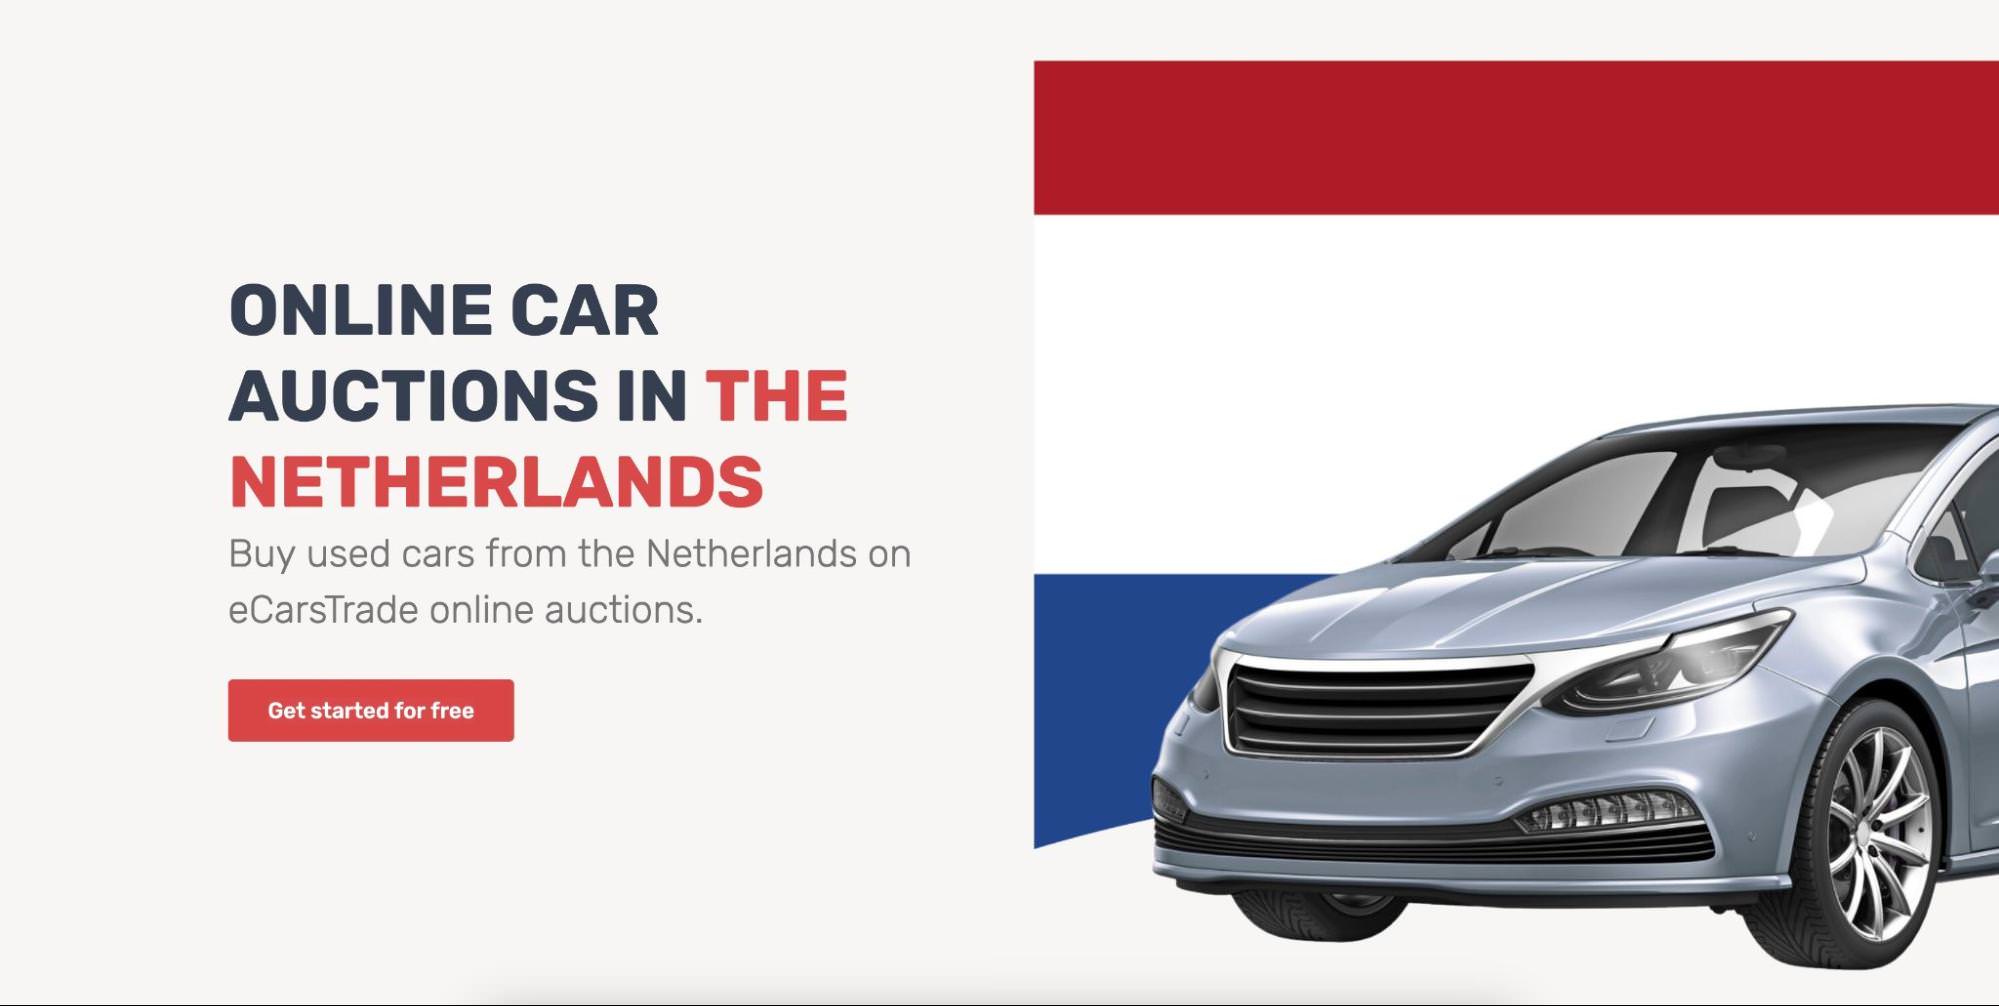 Sekcja główna strony internetowych aukcji samochodów w Holandii, która umożliwia handlowcom licytowanie używanych pojazdów holenderskich.